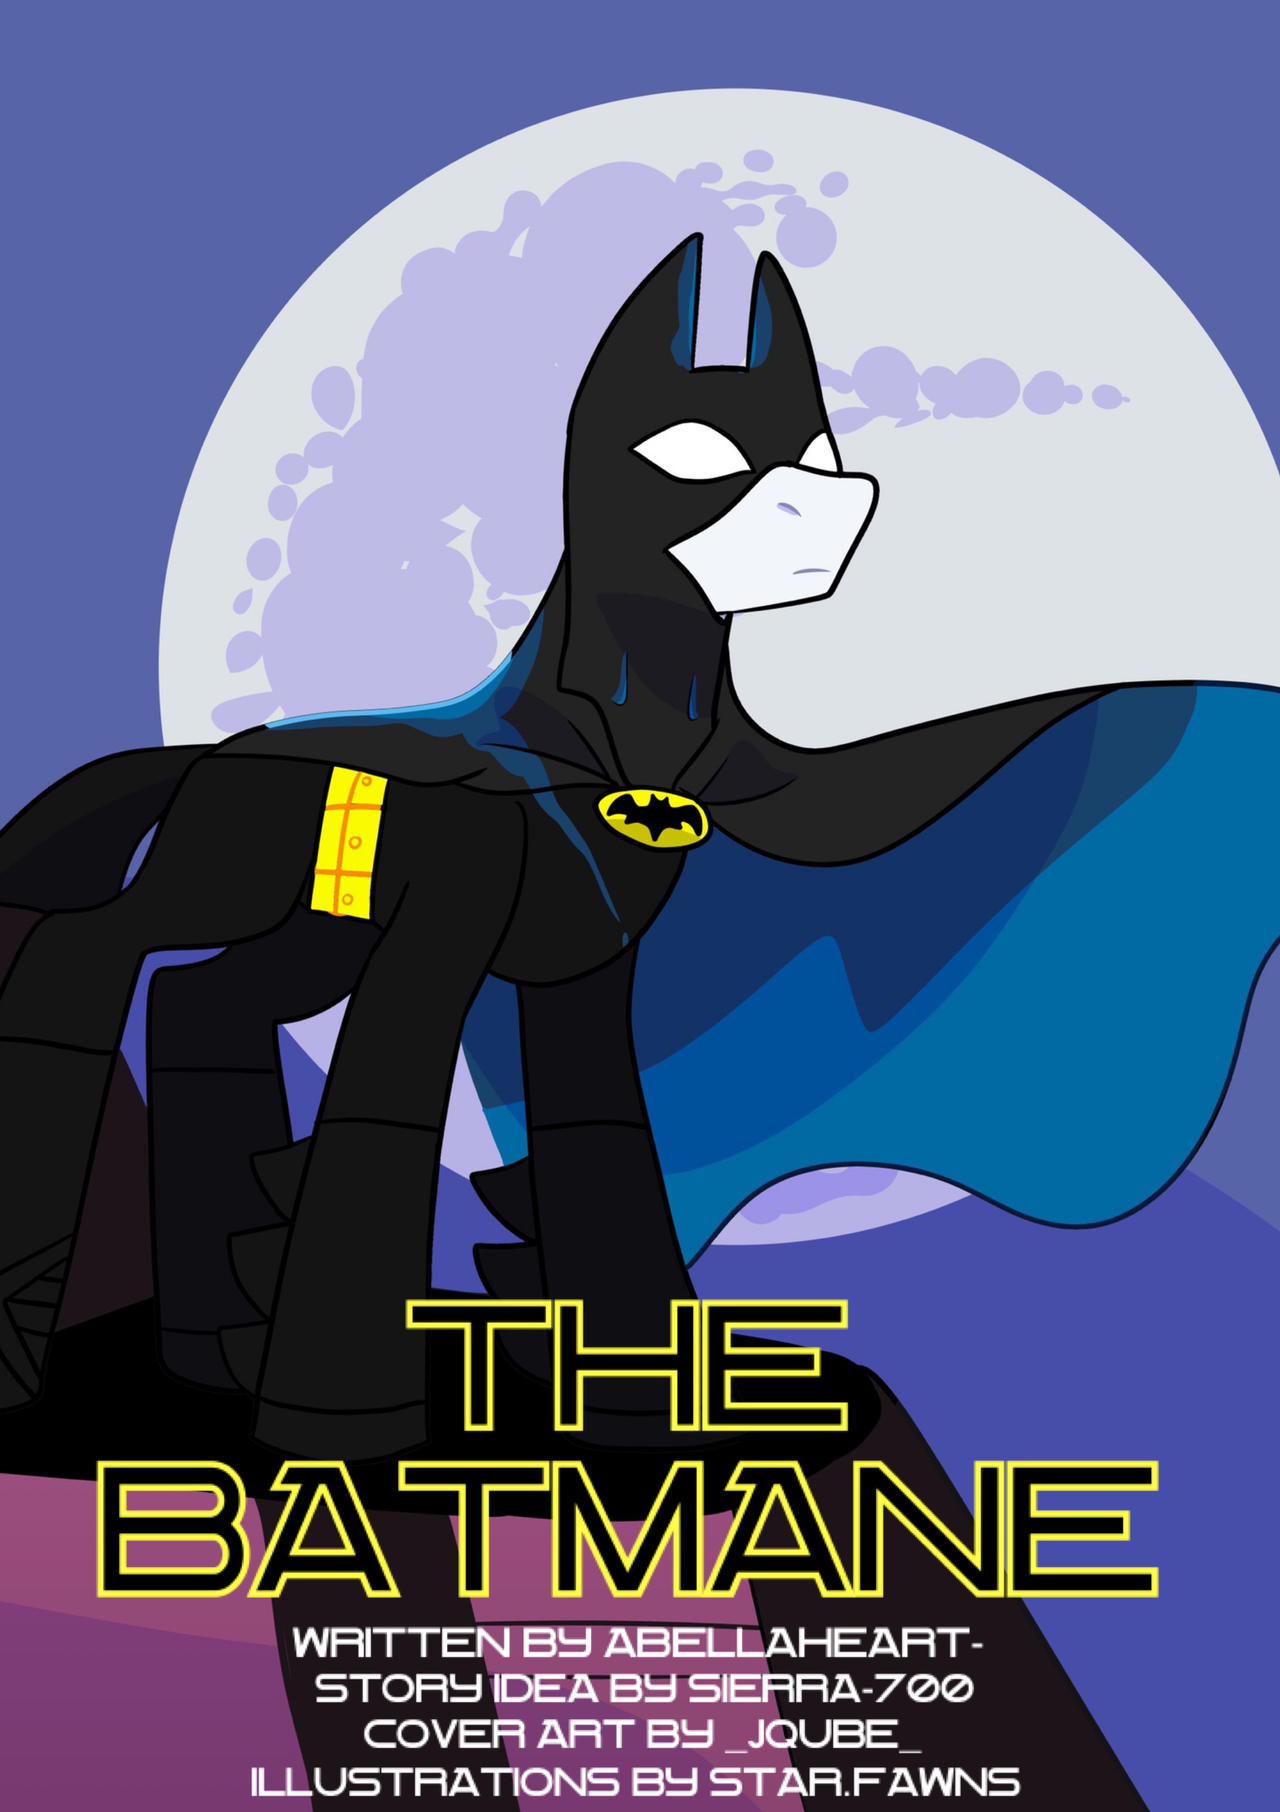 the_batmane__batman_mlp__by_masterjed1jr_deq5wt3-fullview.jpg